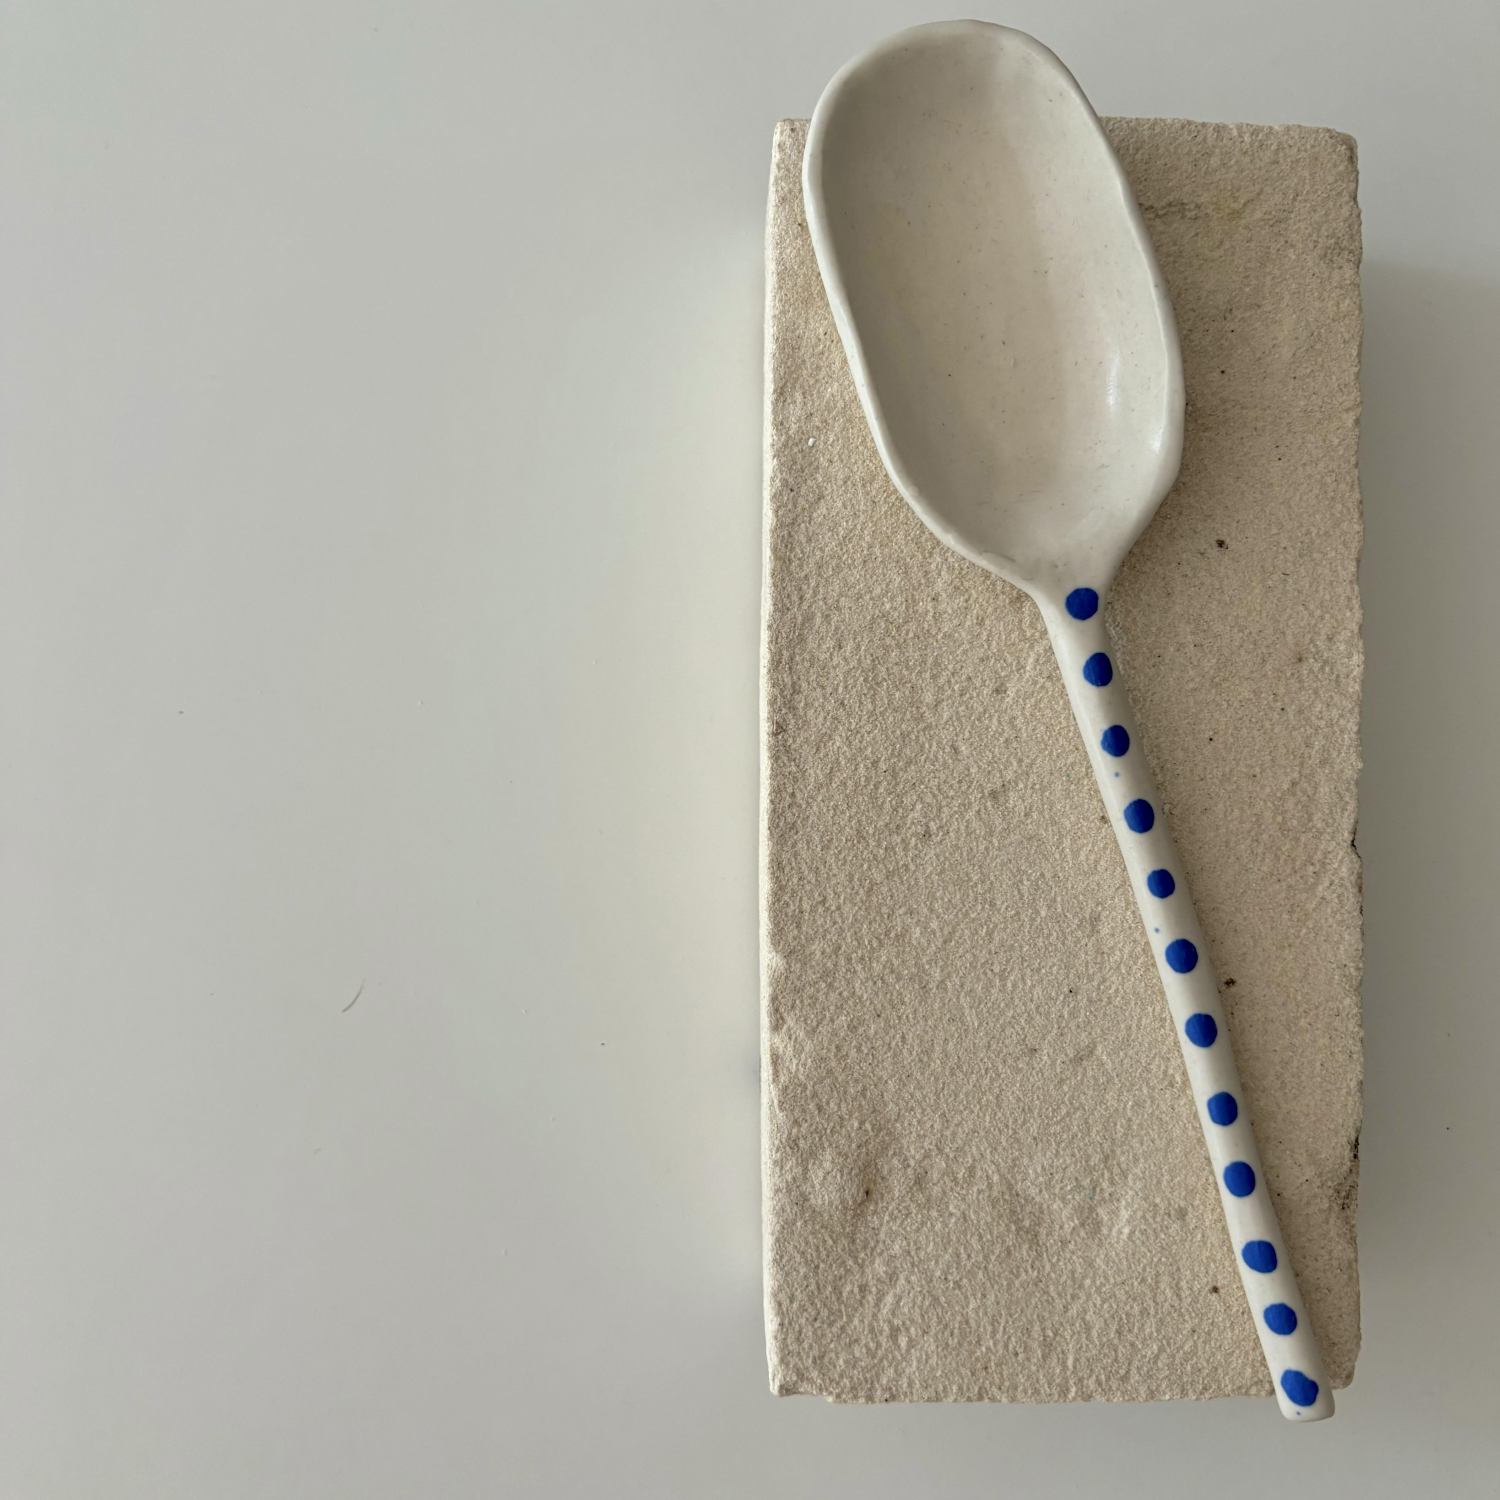 Mati Ceramics: Spoon 2 Product Image 1 of 1